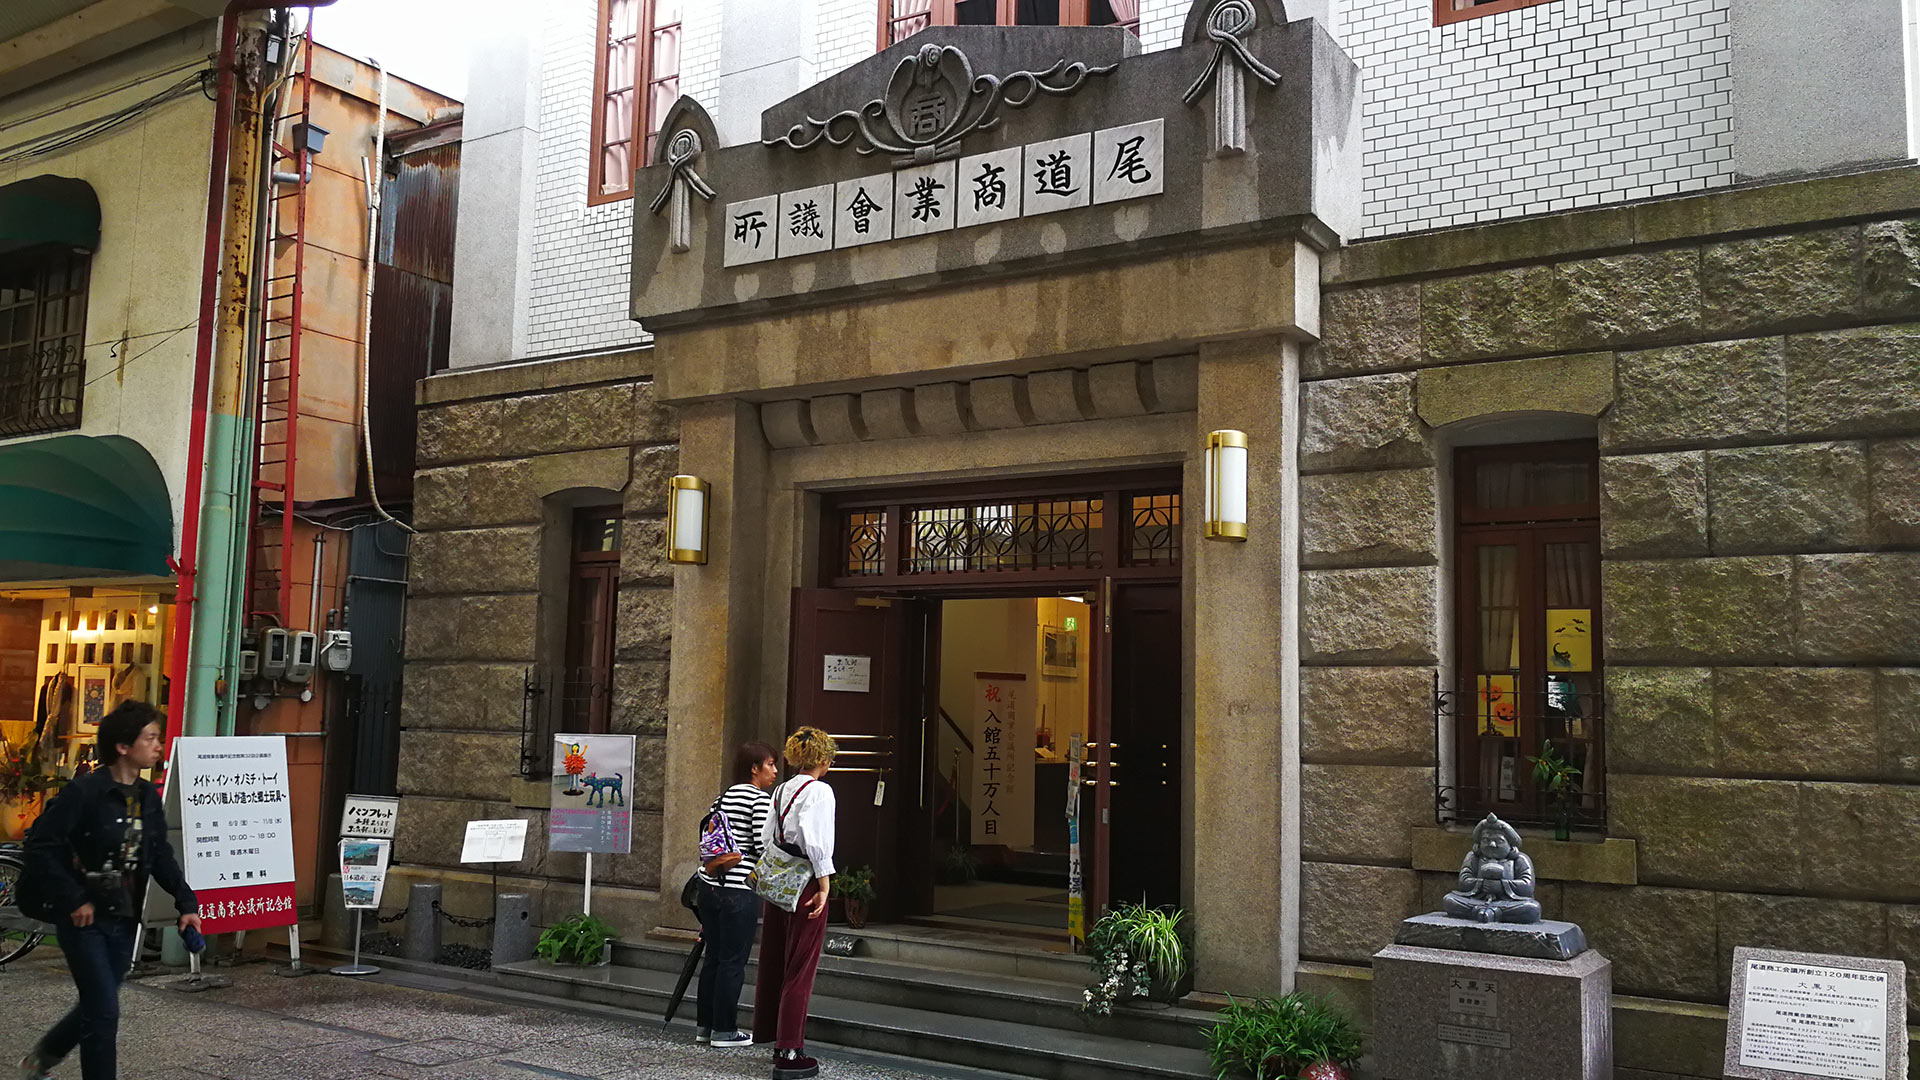 尾道商業会議所記念館（おのみちしょうぎょうかいぎしょきねんかん）Onomichi Commercial Chamber Memorial Hall